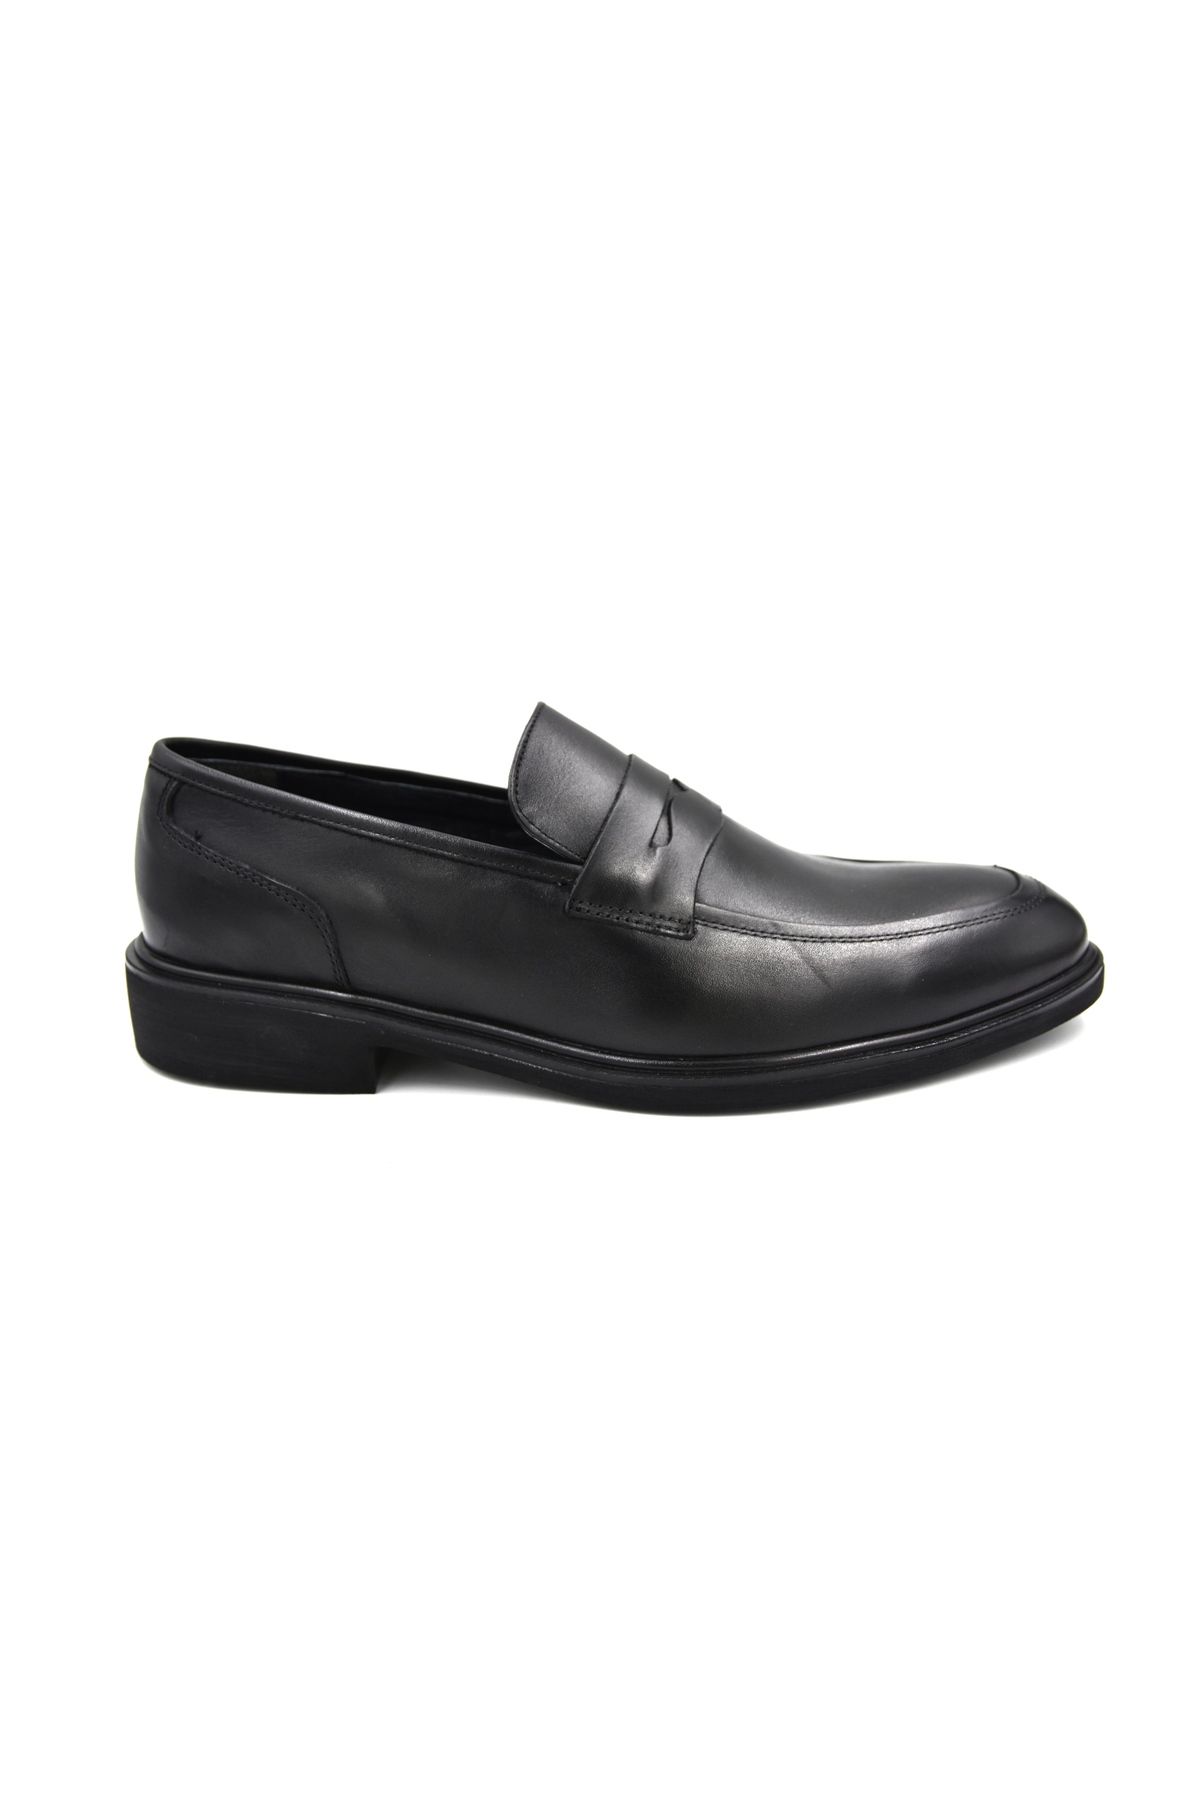 Prego Stilloni Hakiki Deri Poli Hafif Taban Erkek Klasik Ayakkabı Siyah